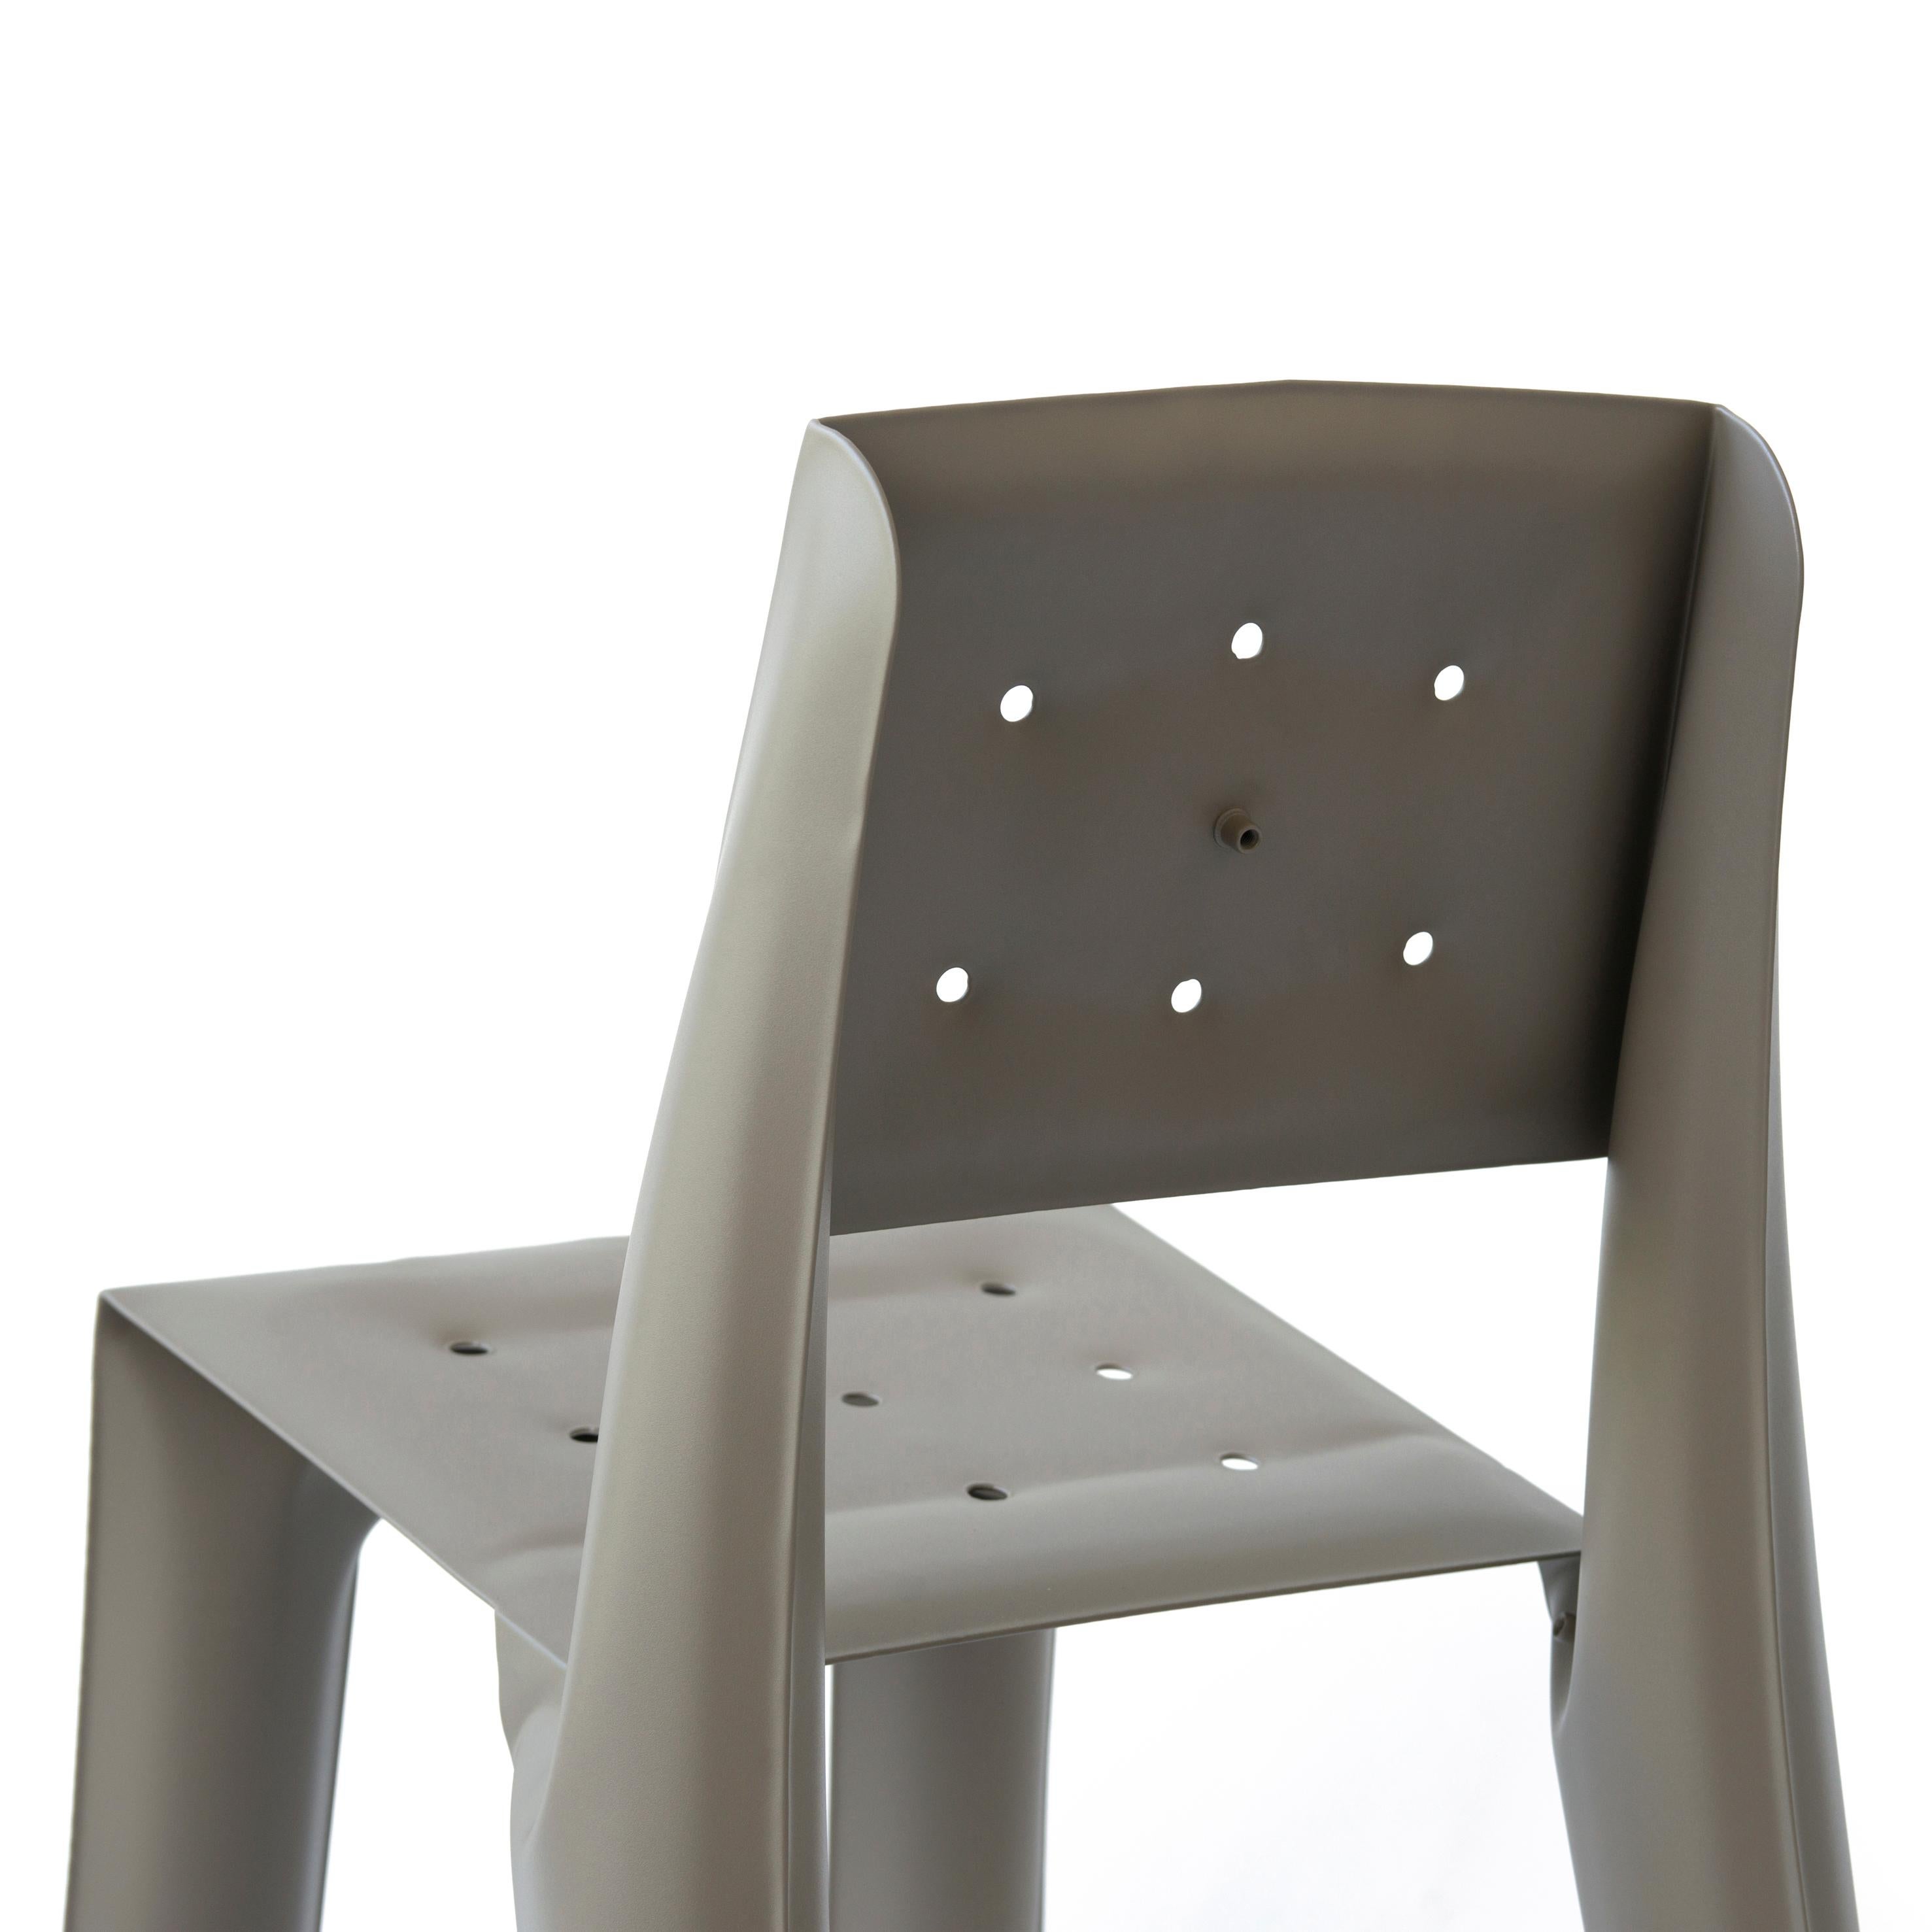 Beige Aluminum Chippensteel 0.5 Sculptural Chair by Zieta For Sale 2